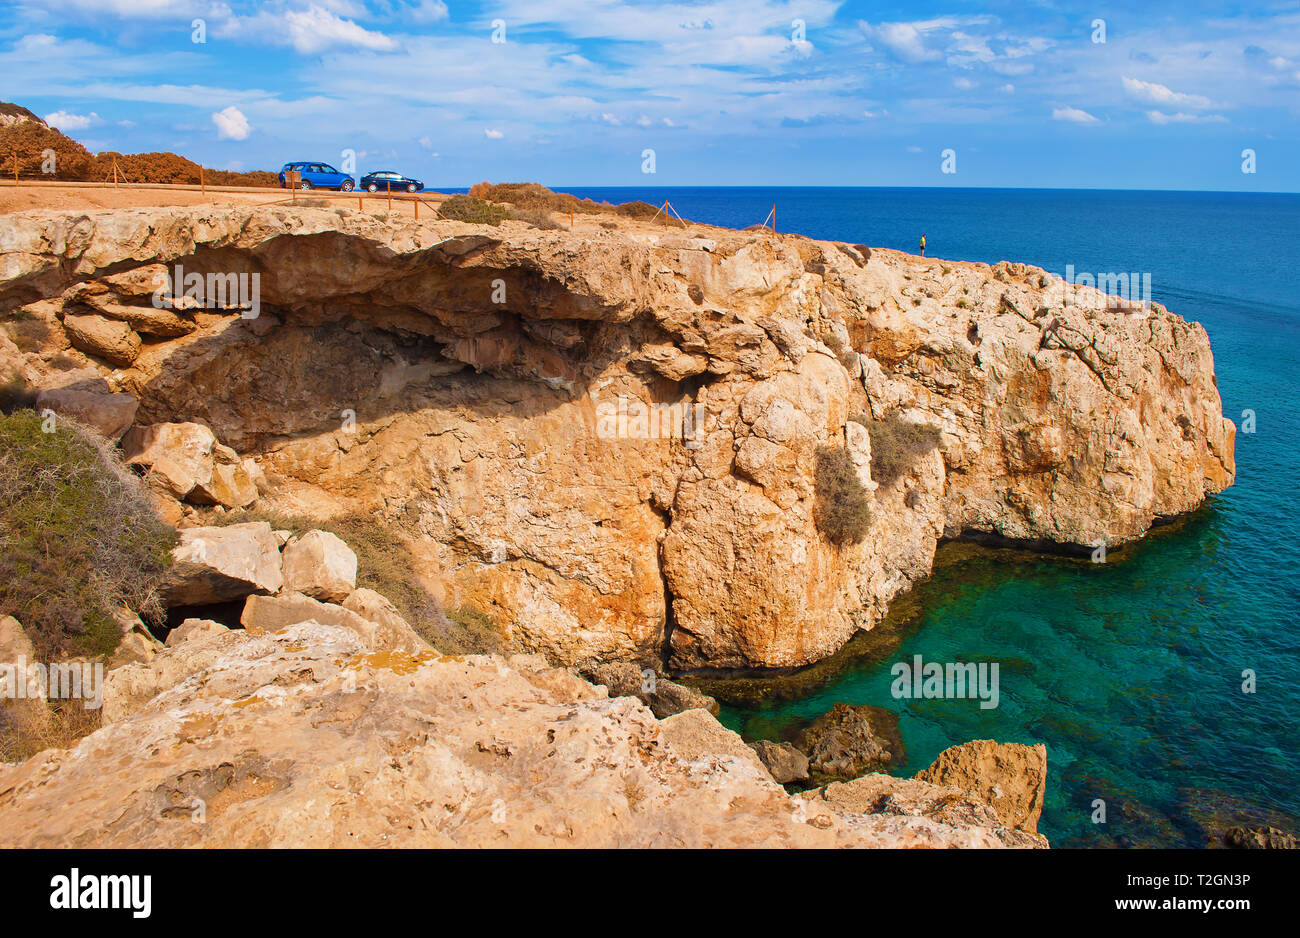 Una pequeña figura de hombre de pie en el borde de un acantilado. Dos autos cerca de una bahía cerca de Cape Greco, Chipre. Cerca de la costa de roca verde profundo azul transparente Foto de stock